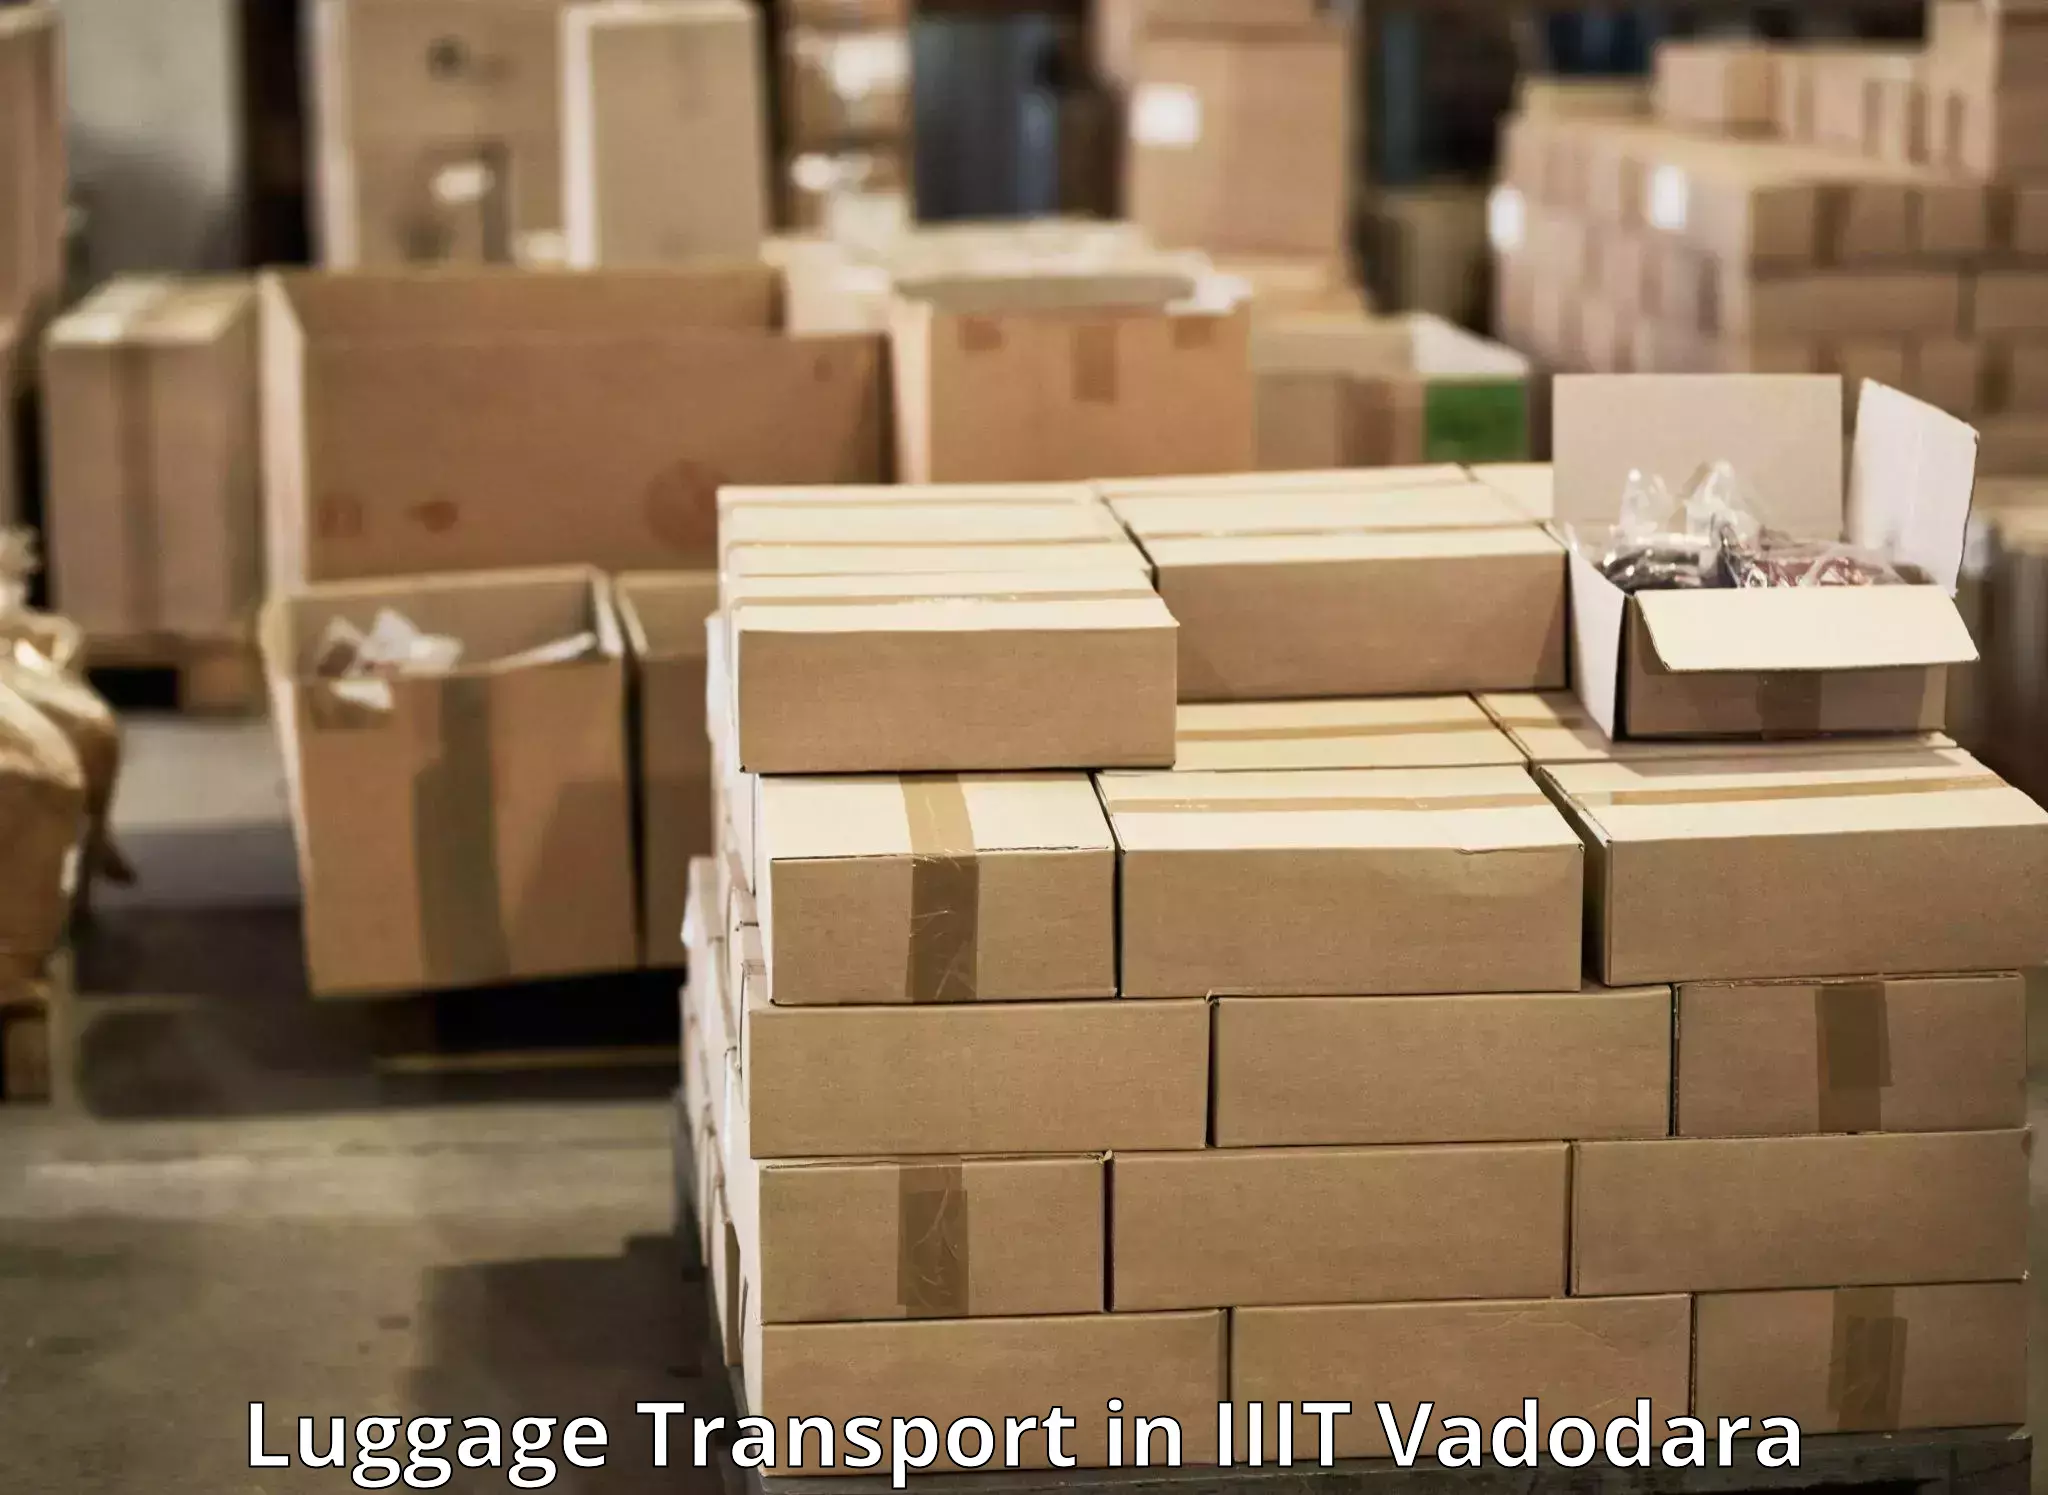 International baggage delivery in IIIT Vadodara